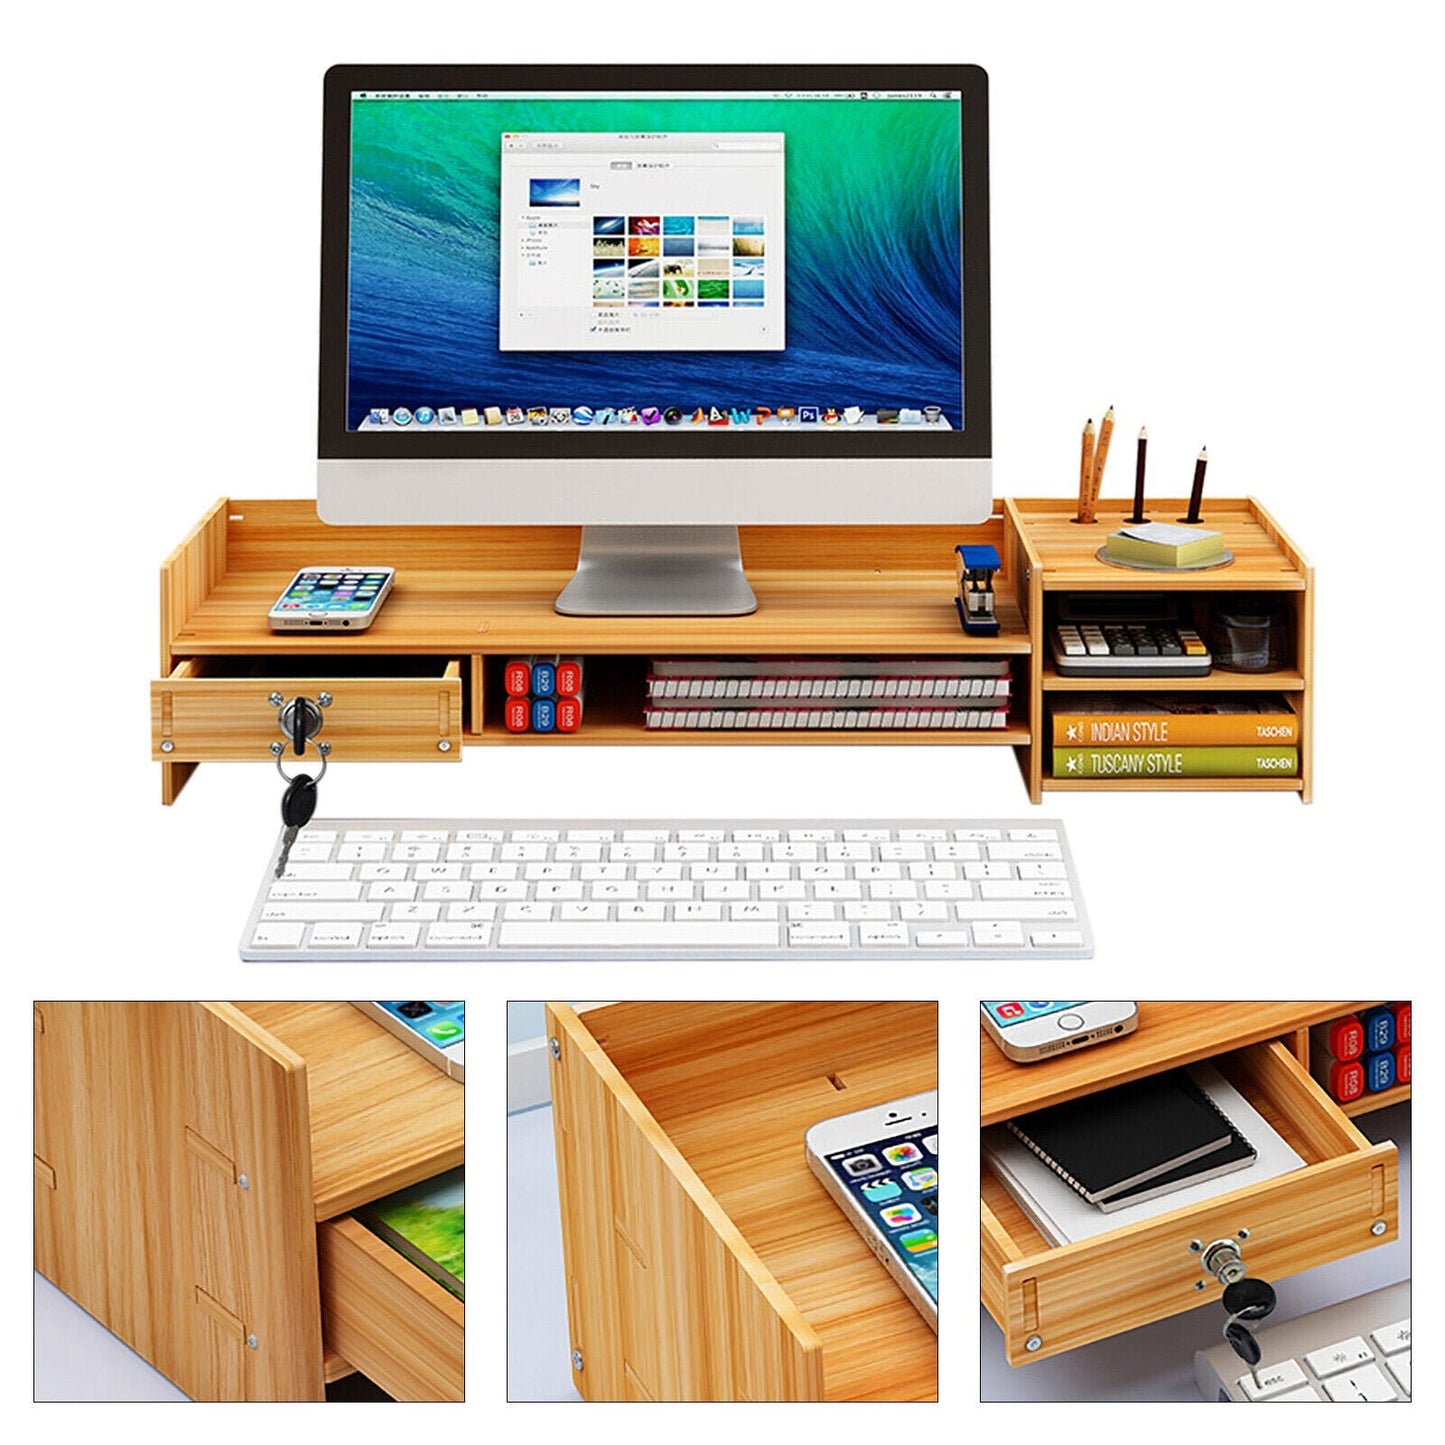 Wooden Office Desk Organizer with Drawers & lock Desktop Storage Monitor Holder